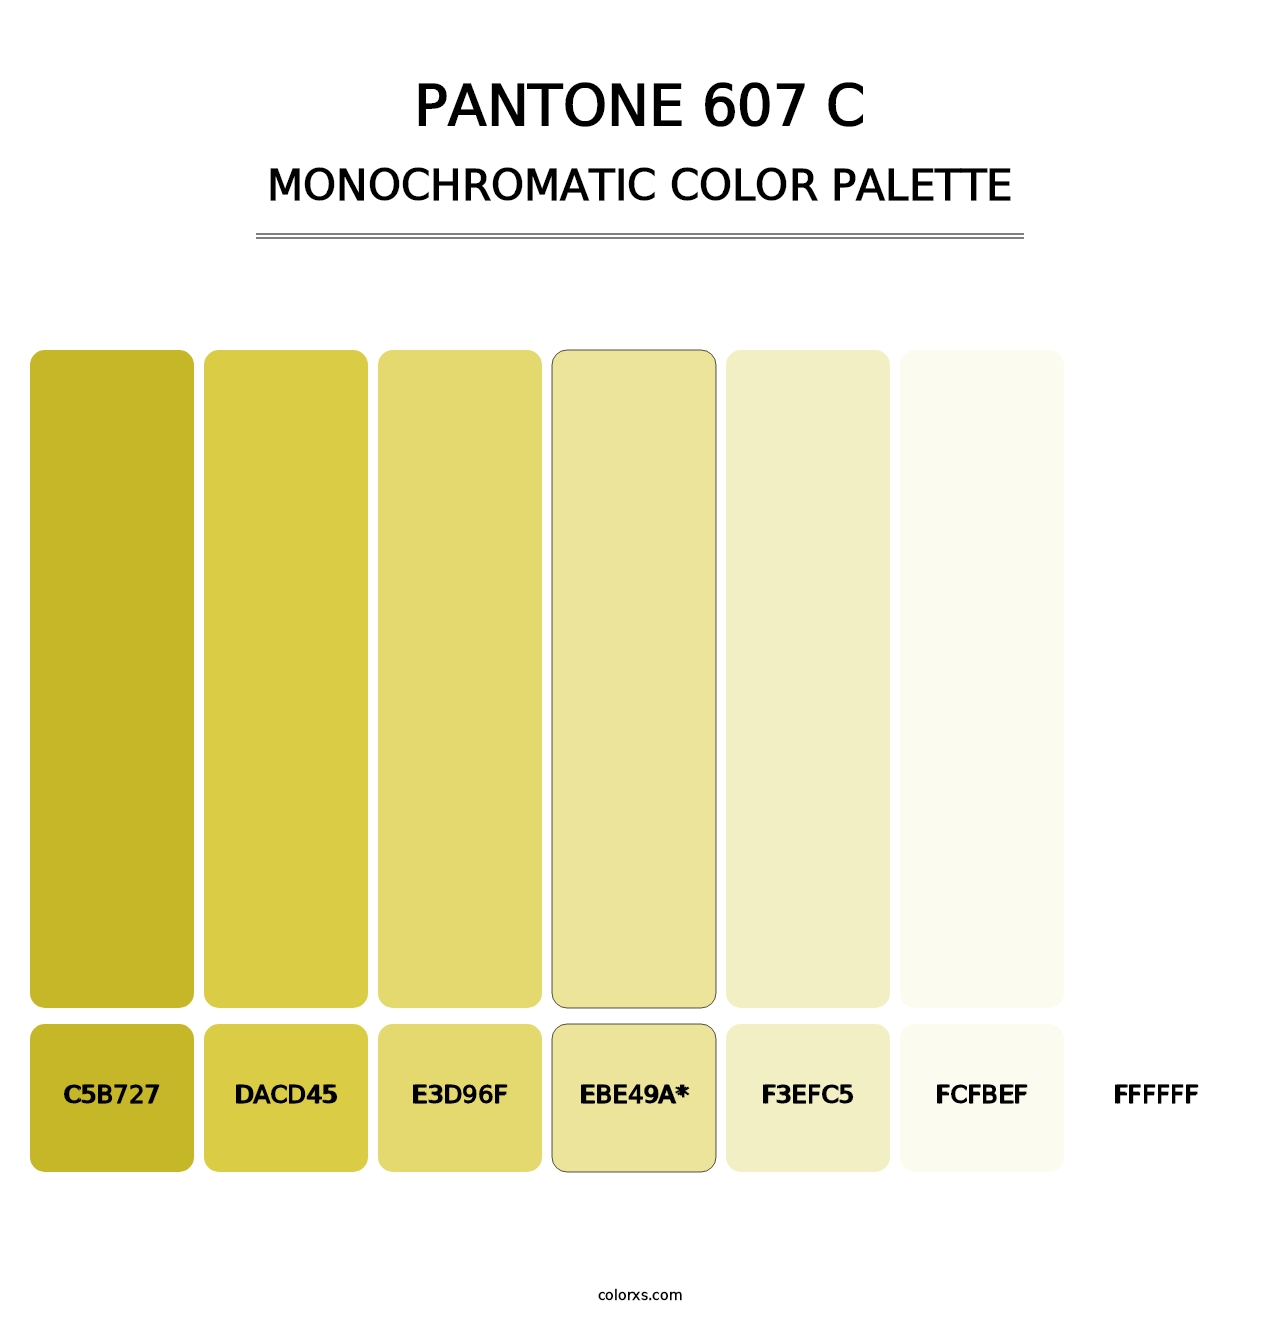 PANTONE 607 C - Monochromatic Color Palette